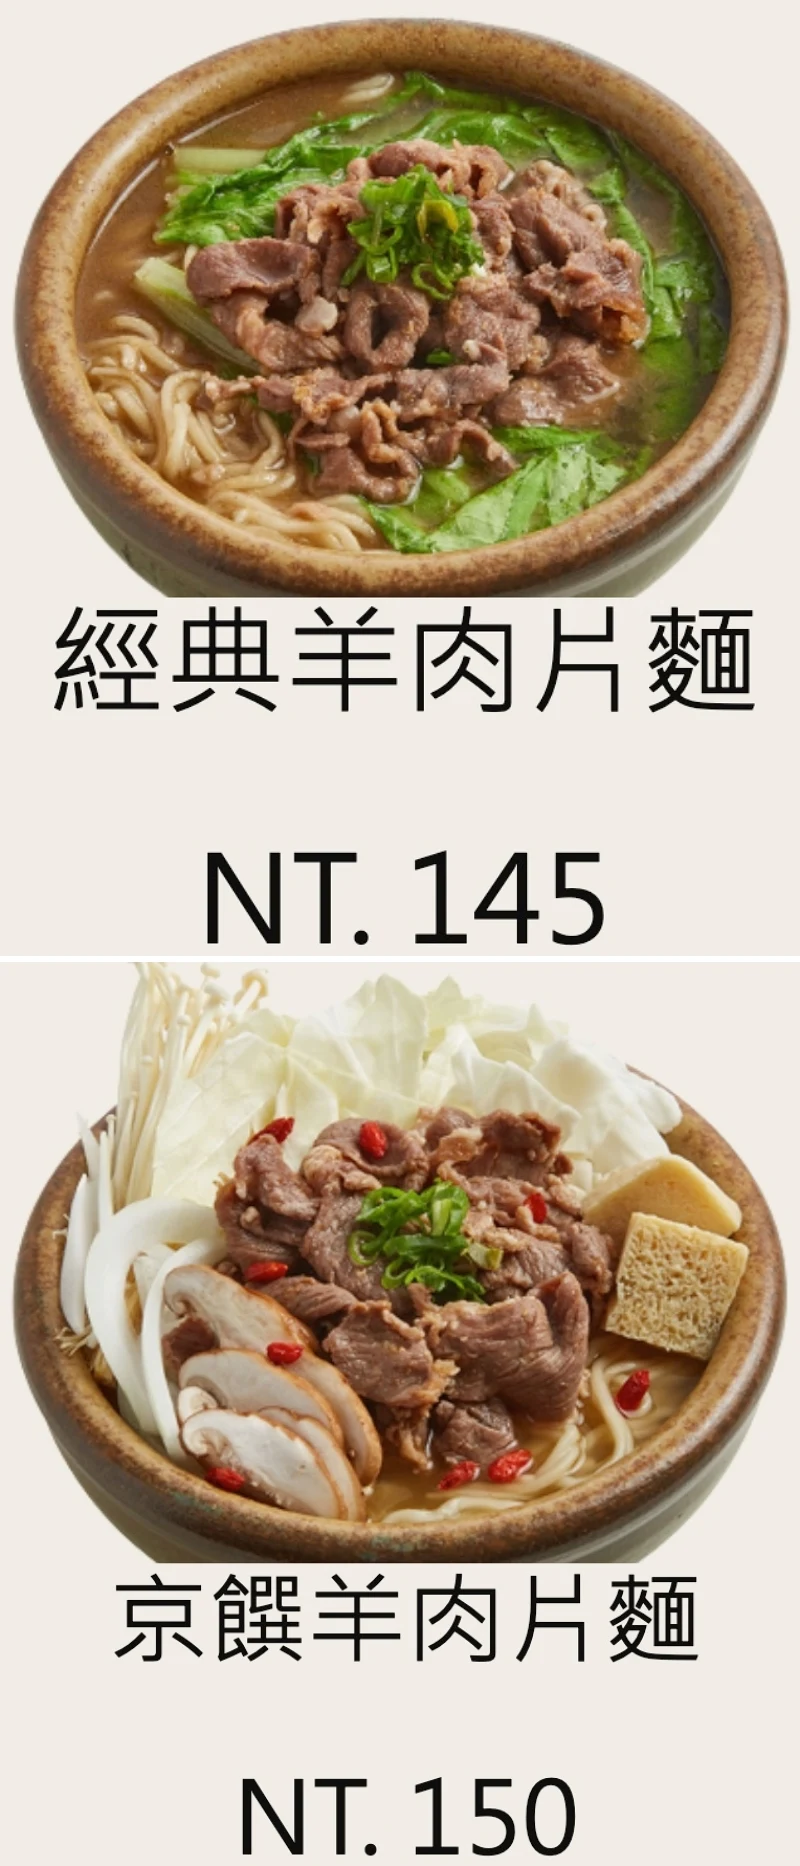 甘泉魚麵三峽北大店 菜單MENU